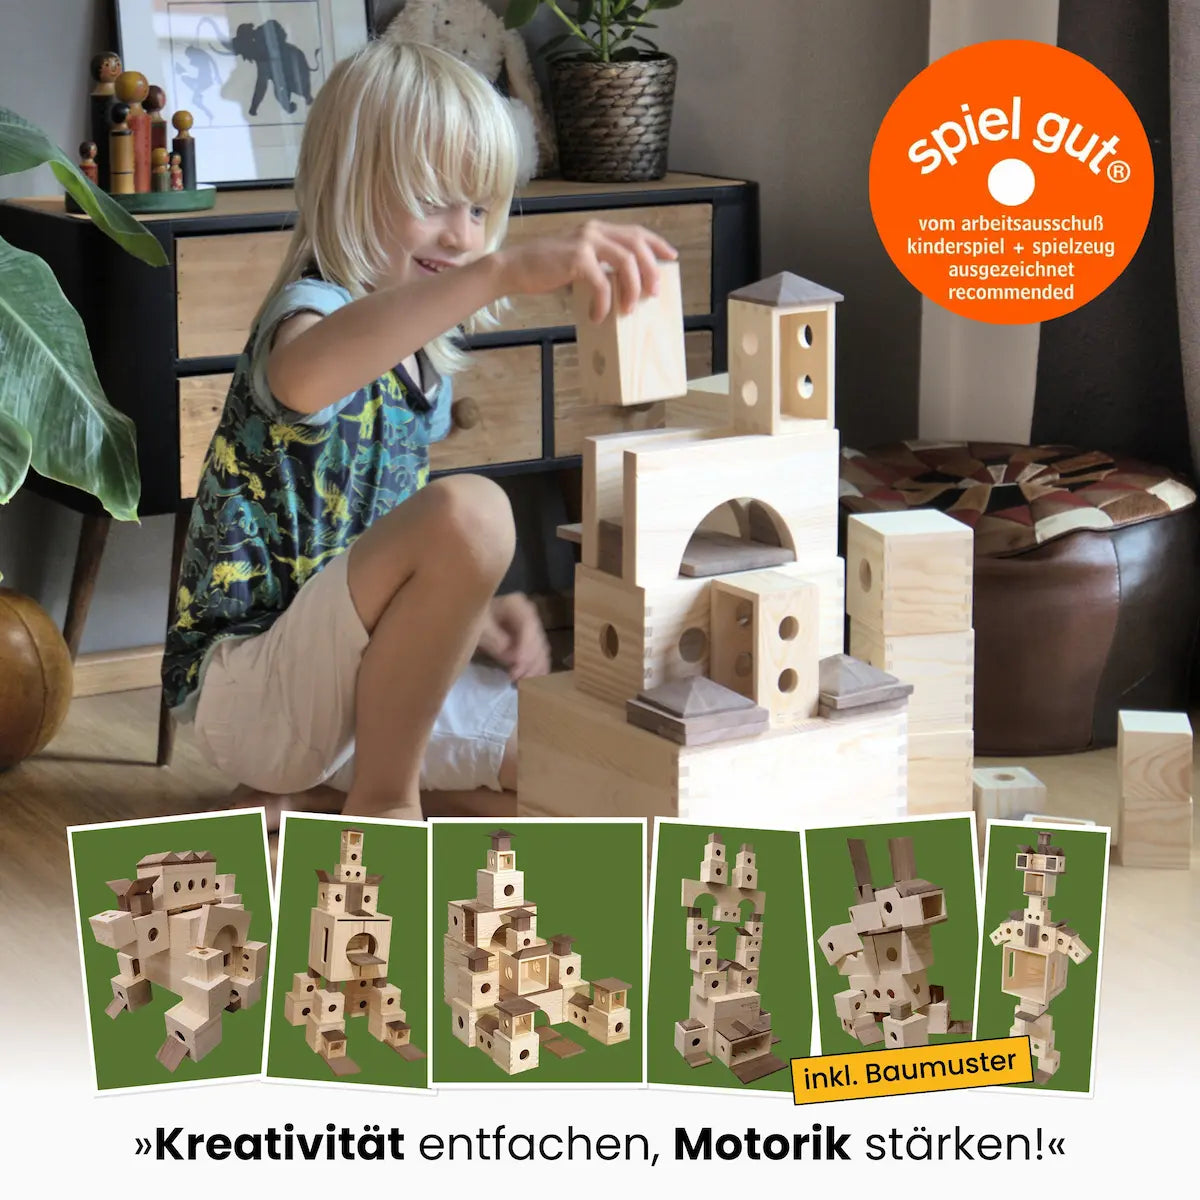 Foto Kind baut glücklich mit der Matzbox, obenlinks das spiel gut Logo, unten eine Aufreihung von 6 Baumusterfotos auf grünem Hintergrund. Ganz unten der Text "Kreativität entfachen, Motorik stärken"